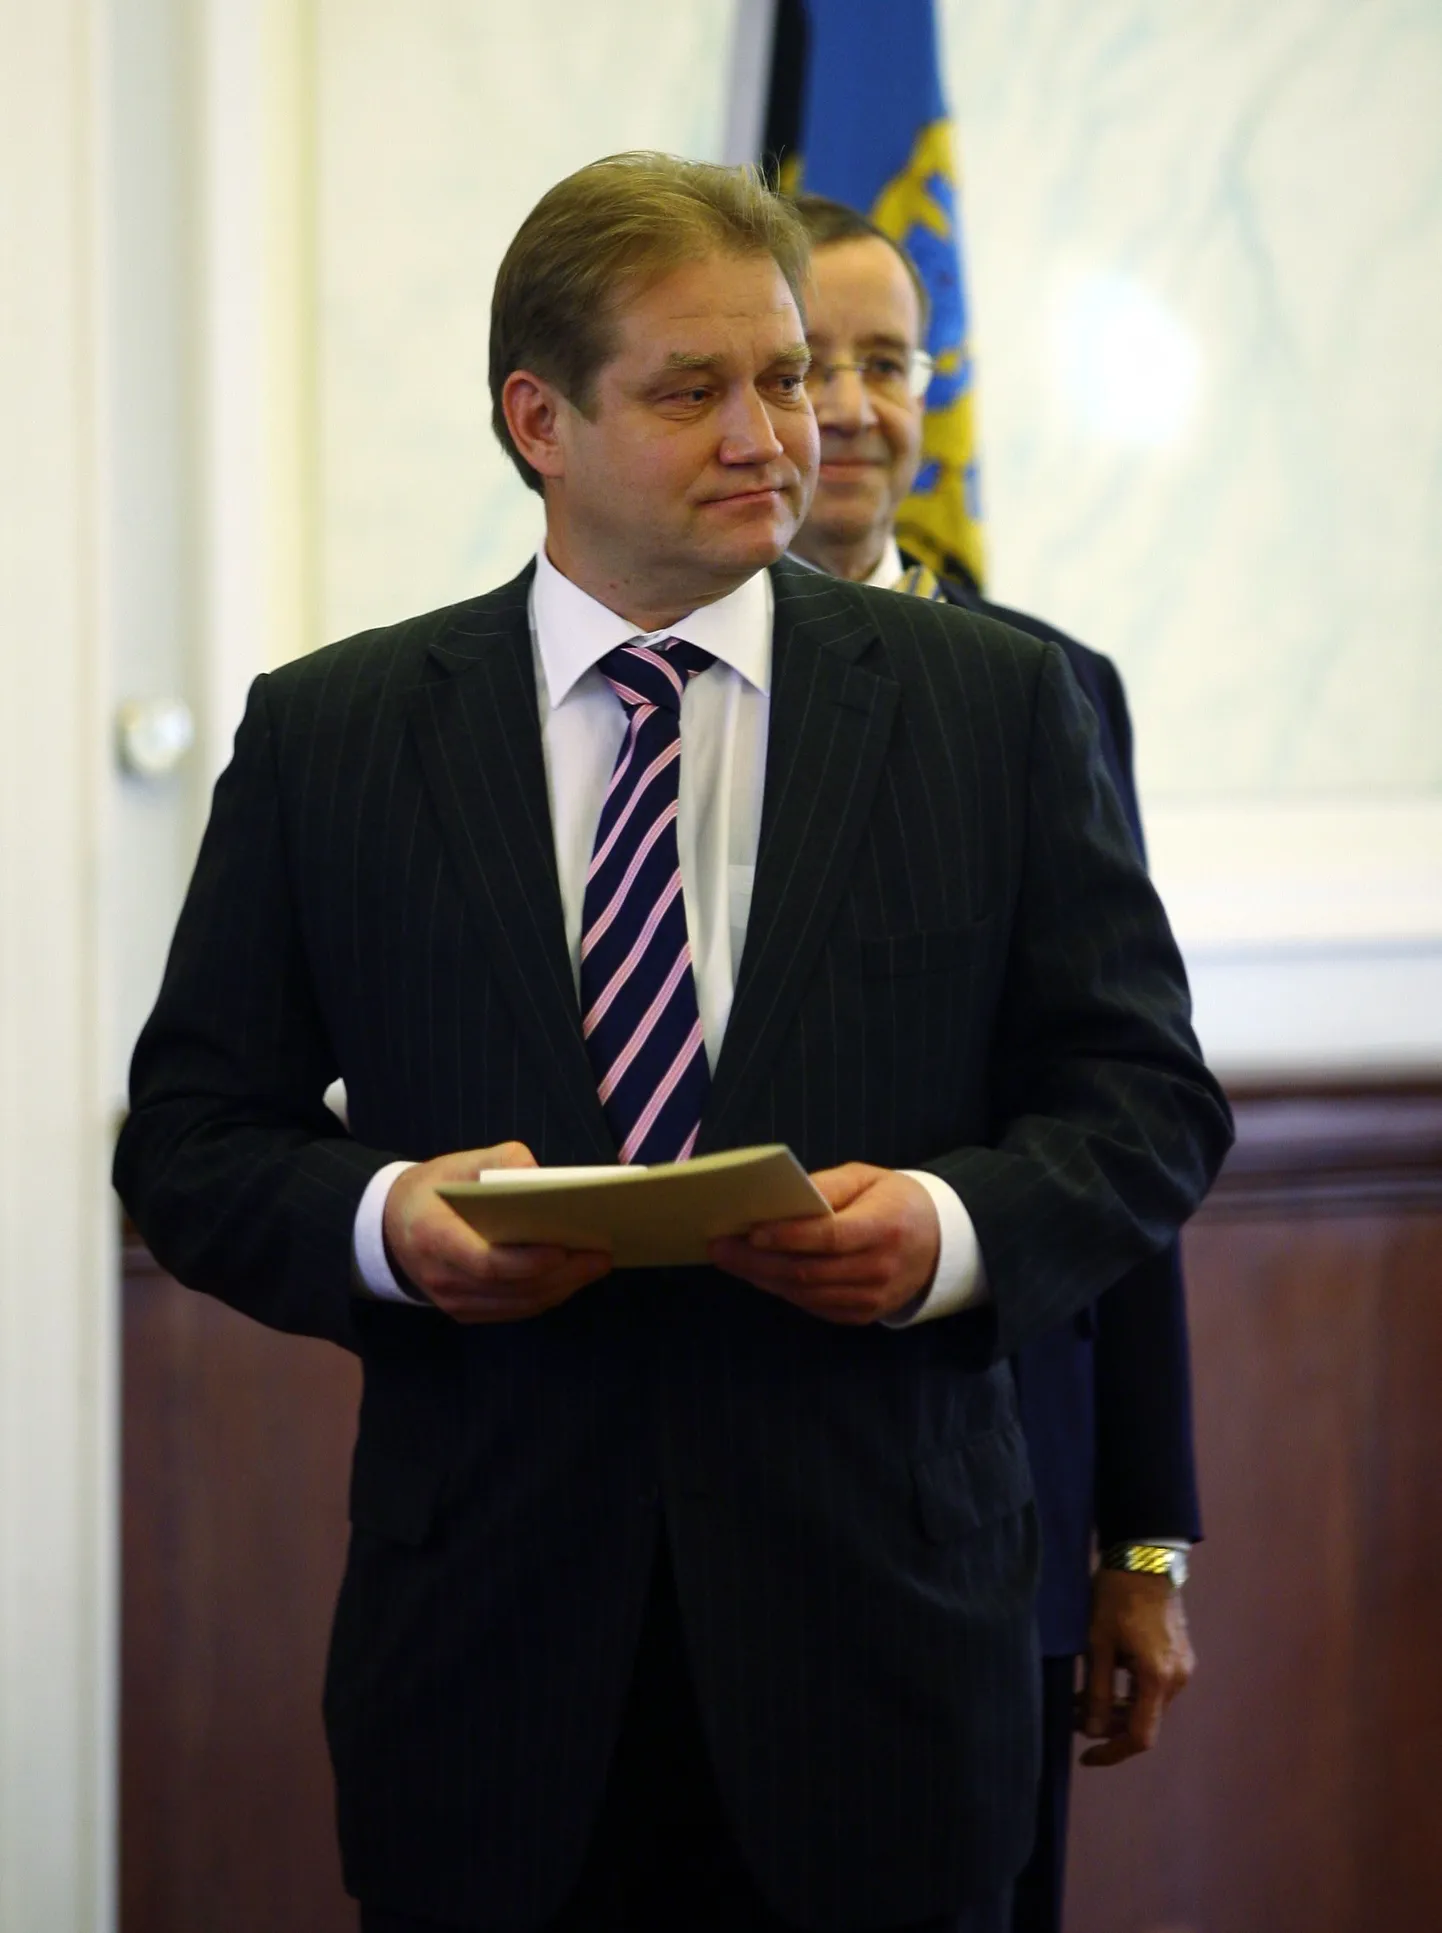 Endine rahandusminister ja Eesti euroalaga liitumisele kaasaaitaja Ivari Padar sai Riigivapi III klassi ordeni.